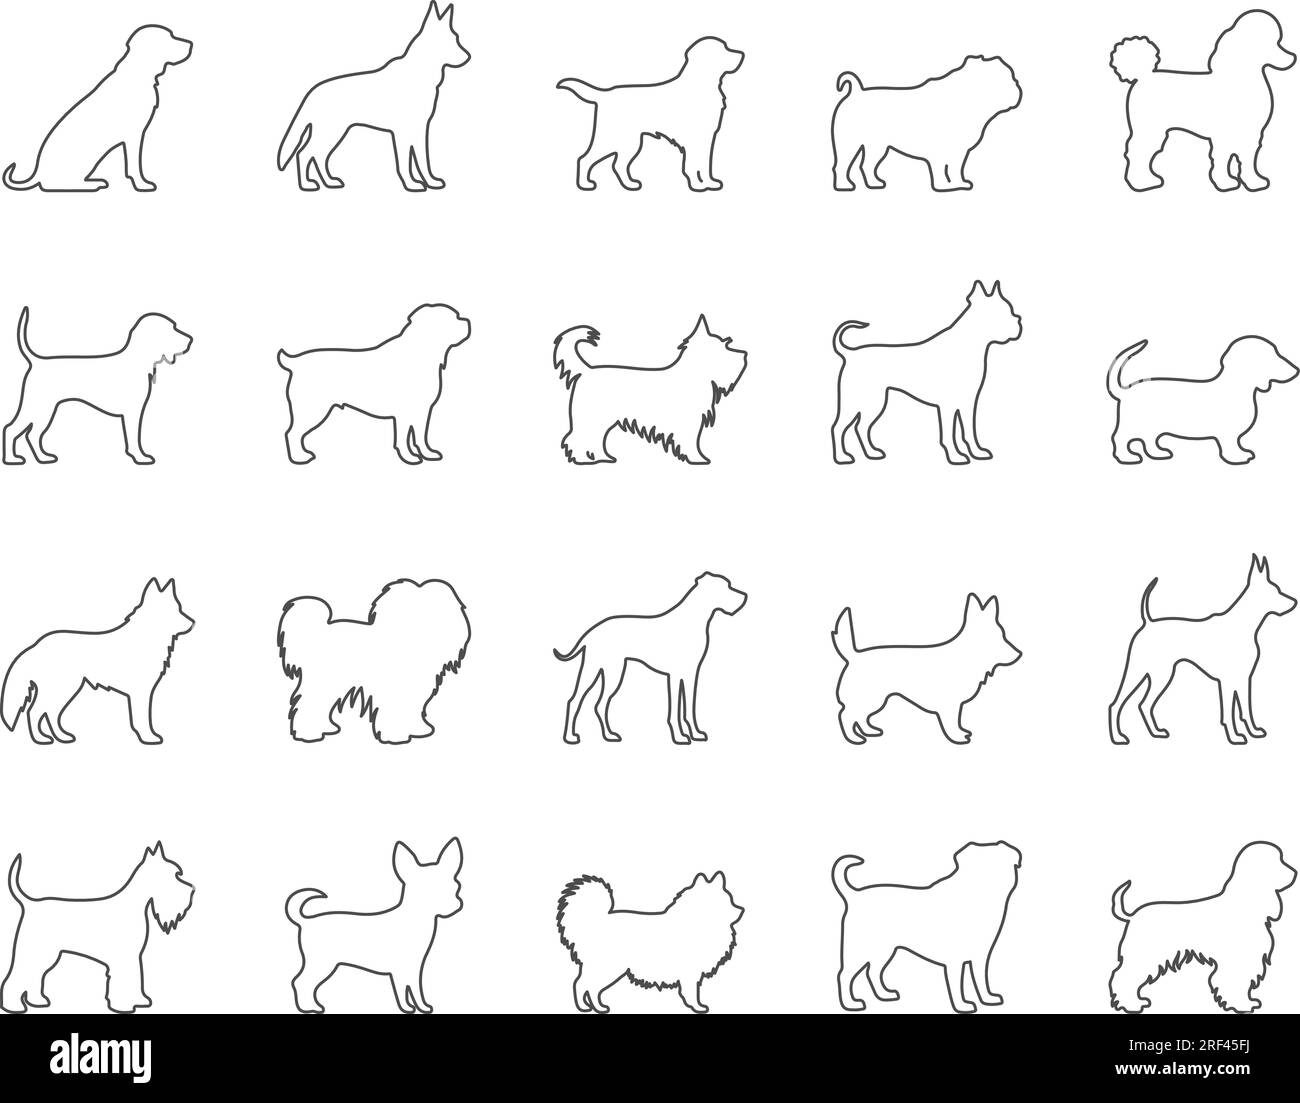 Dog Breeds Icons Set. Retriever, German Shepherd, Bulldog. Editable Stroke. Simple Icons Vector Collection Stock Vector